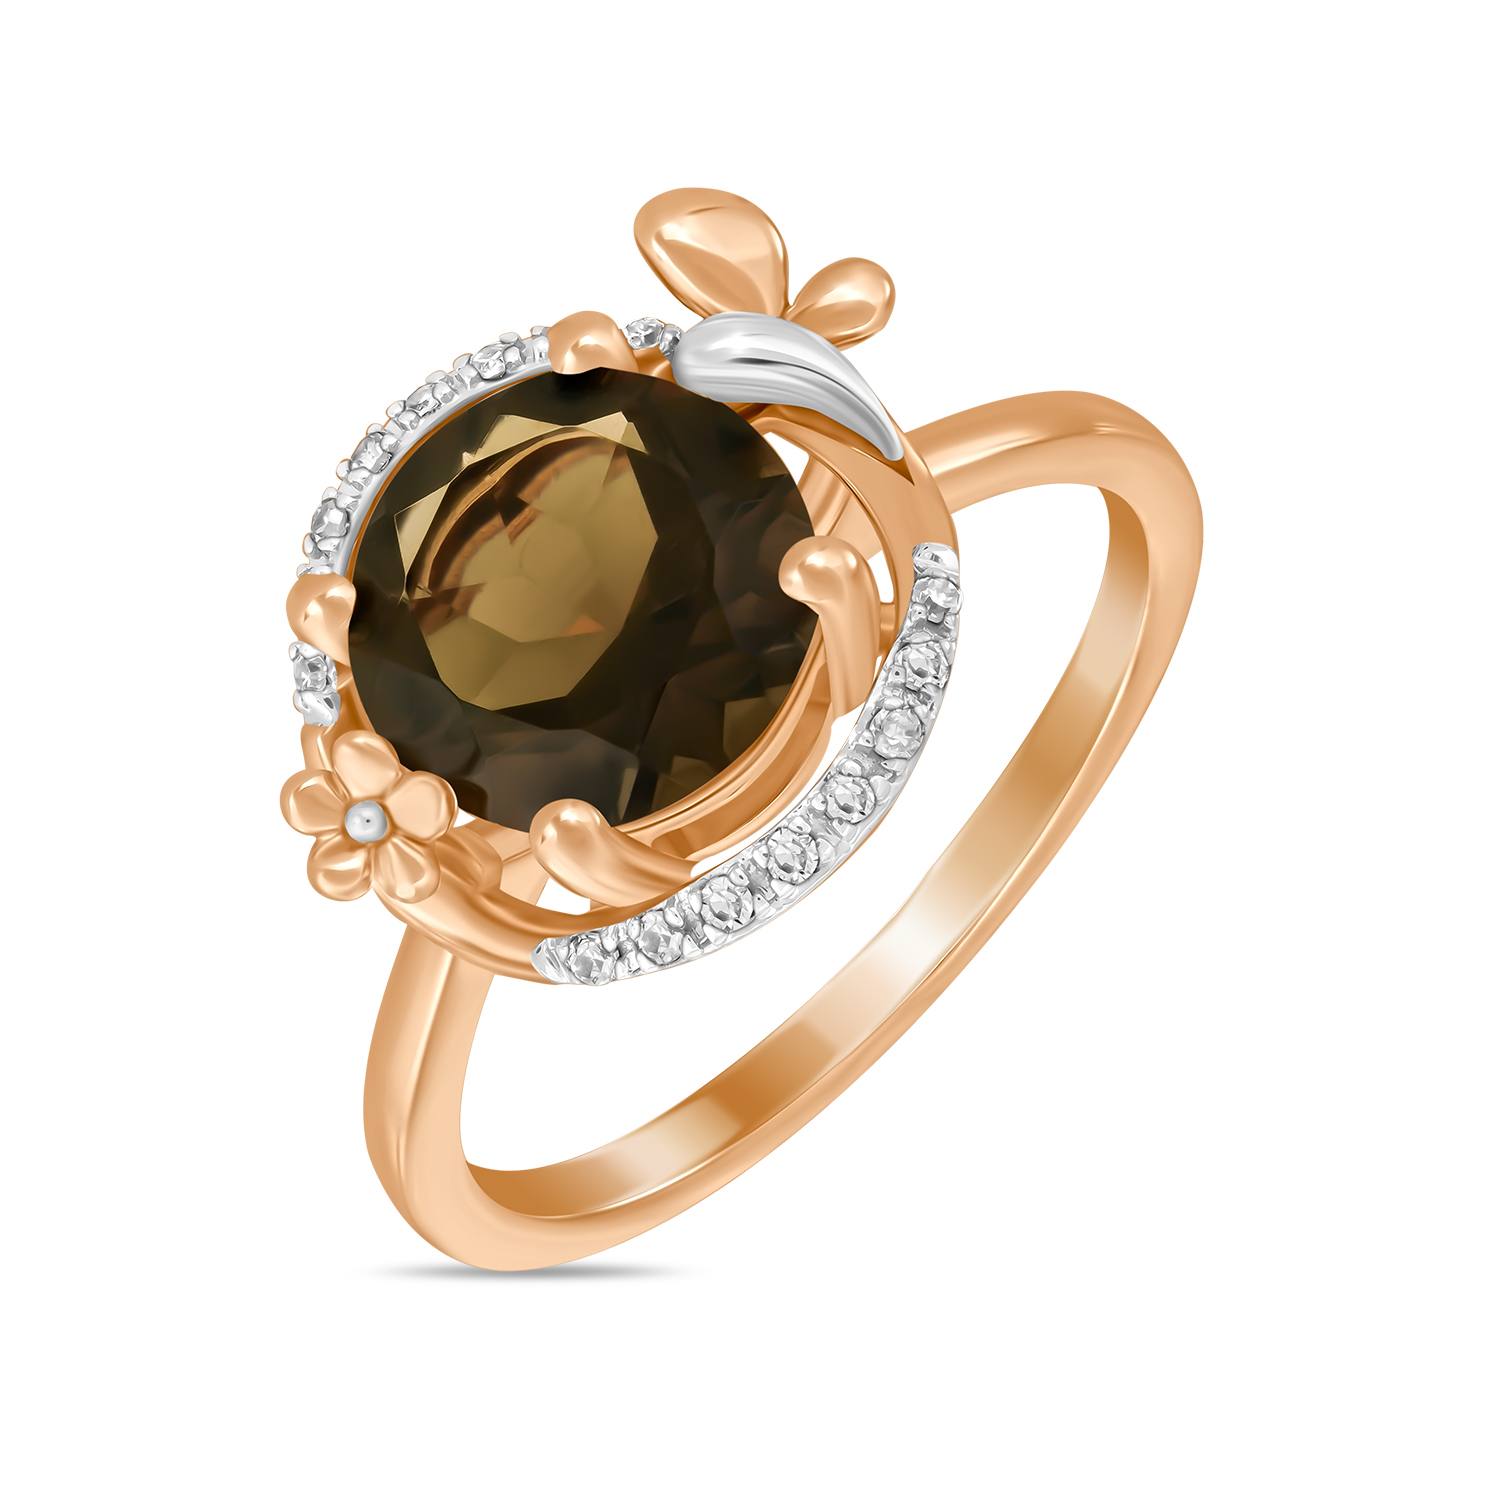 Кольца МЮЗ Золотое кольцо с бриллиантами и кварцем miuz ru золотое кольцо c бриллиантами перидотом и кварцем